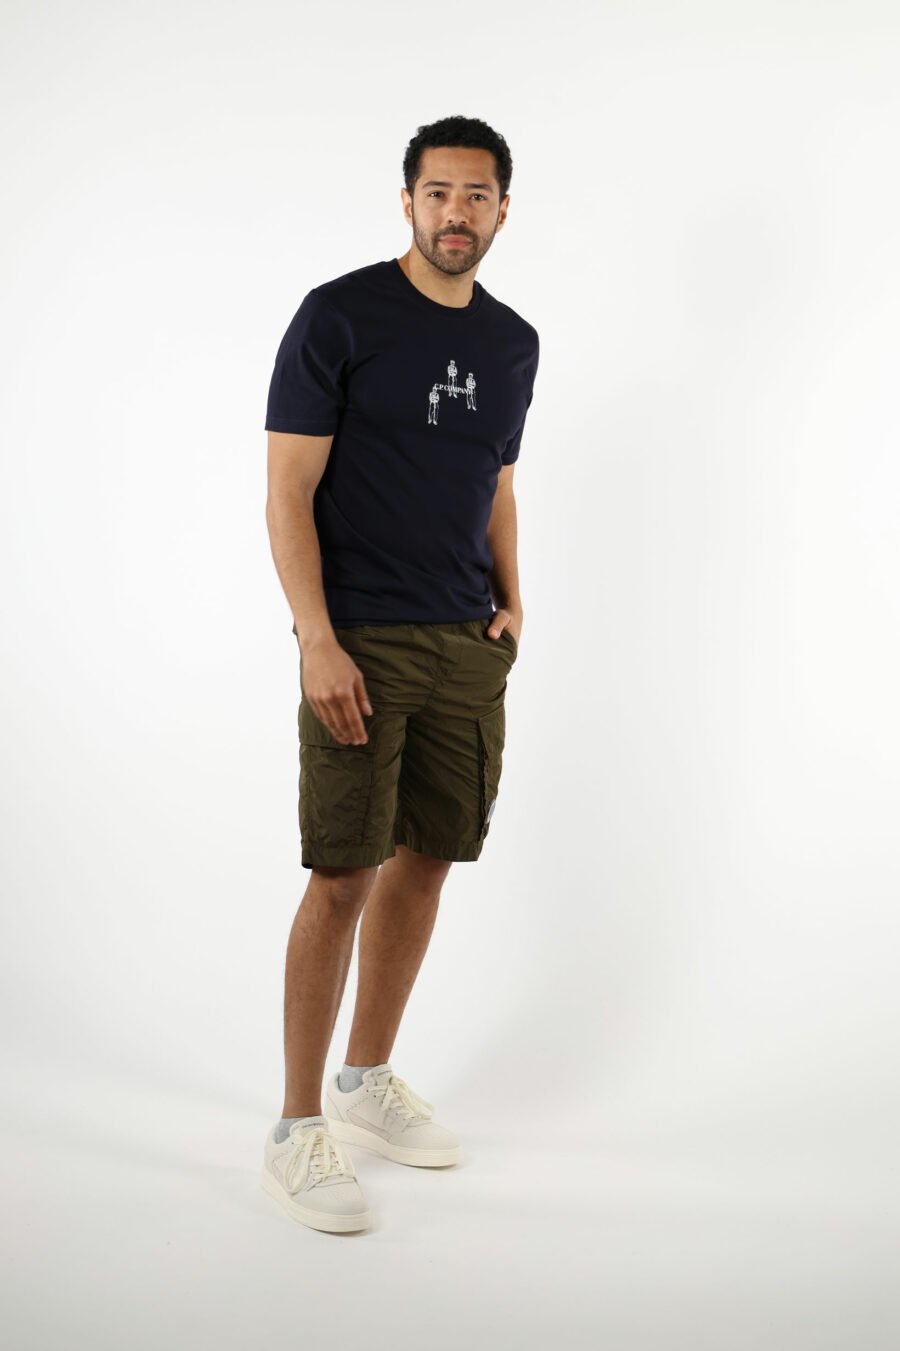 Dunkelblaues T-Shirt mit Minilogue "cp" mit zentrierten Matrosen - 111346